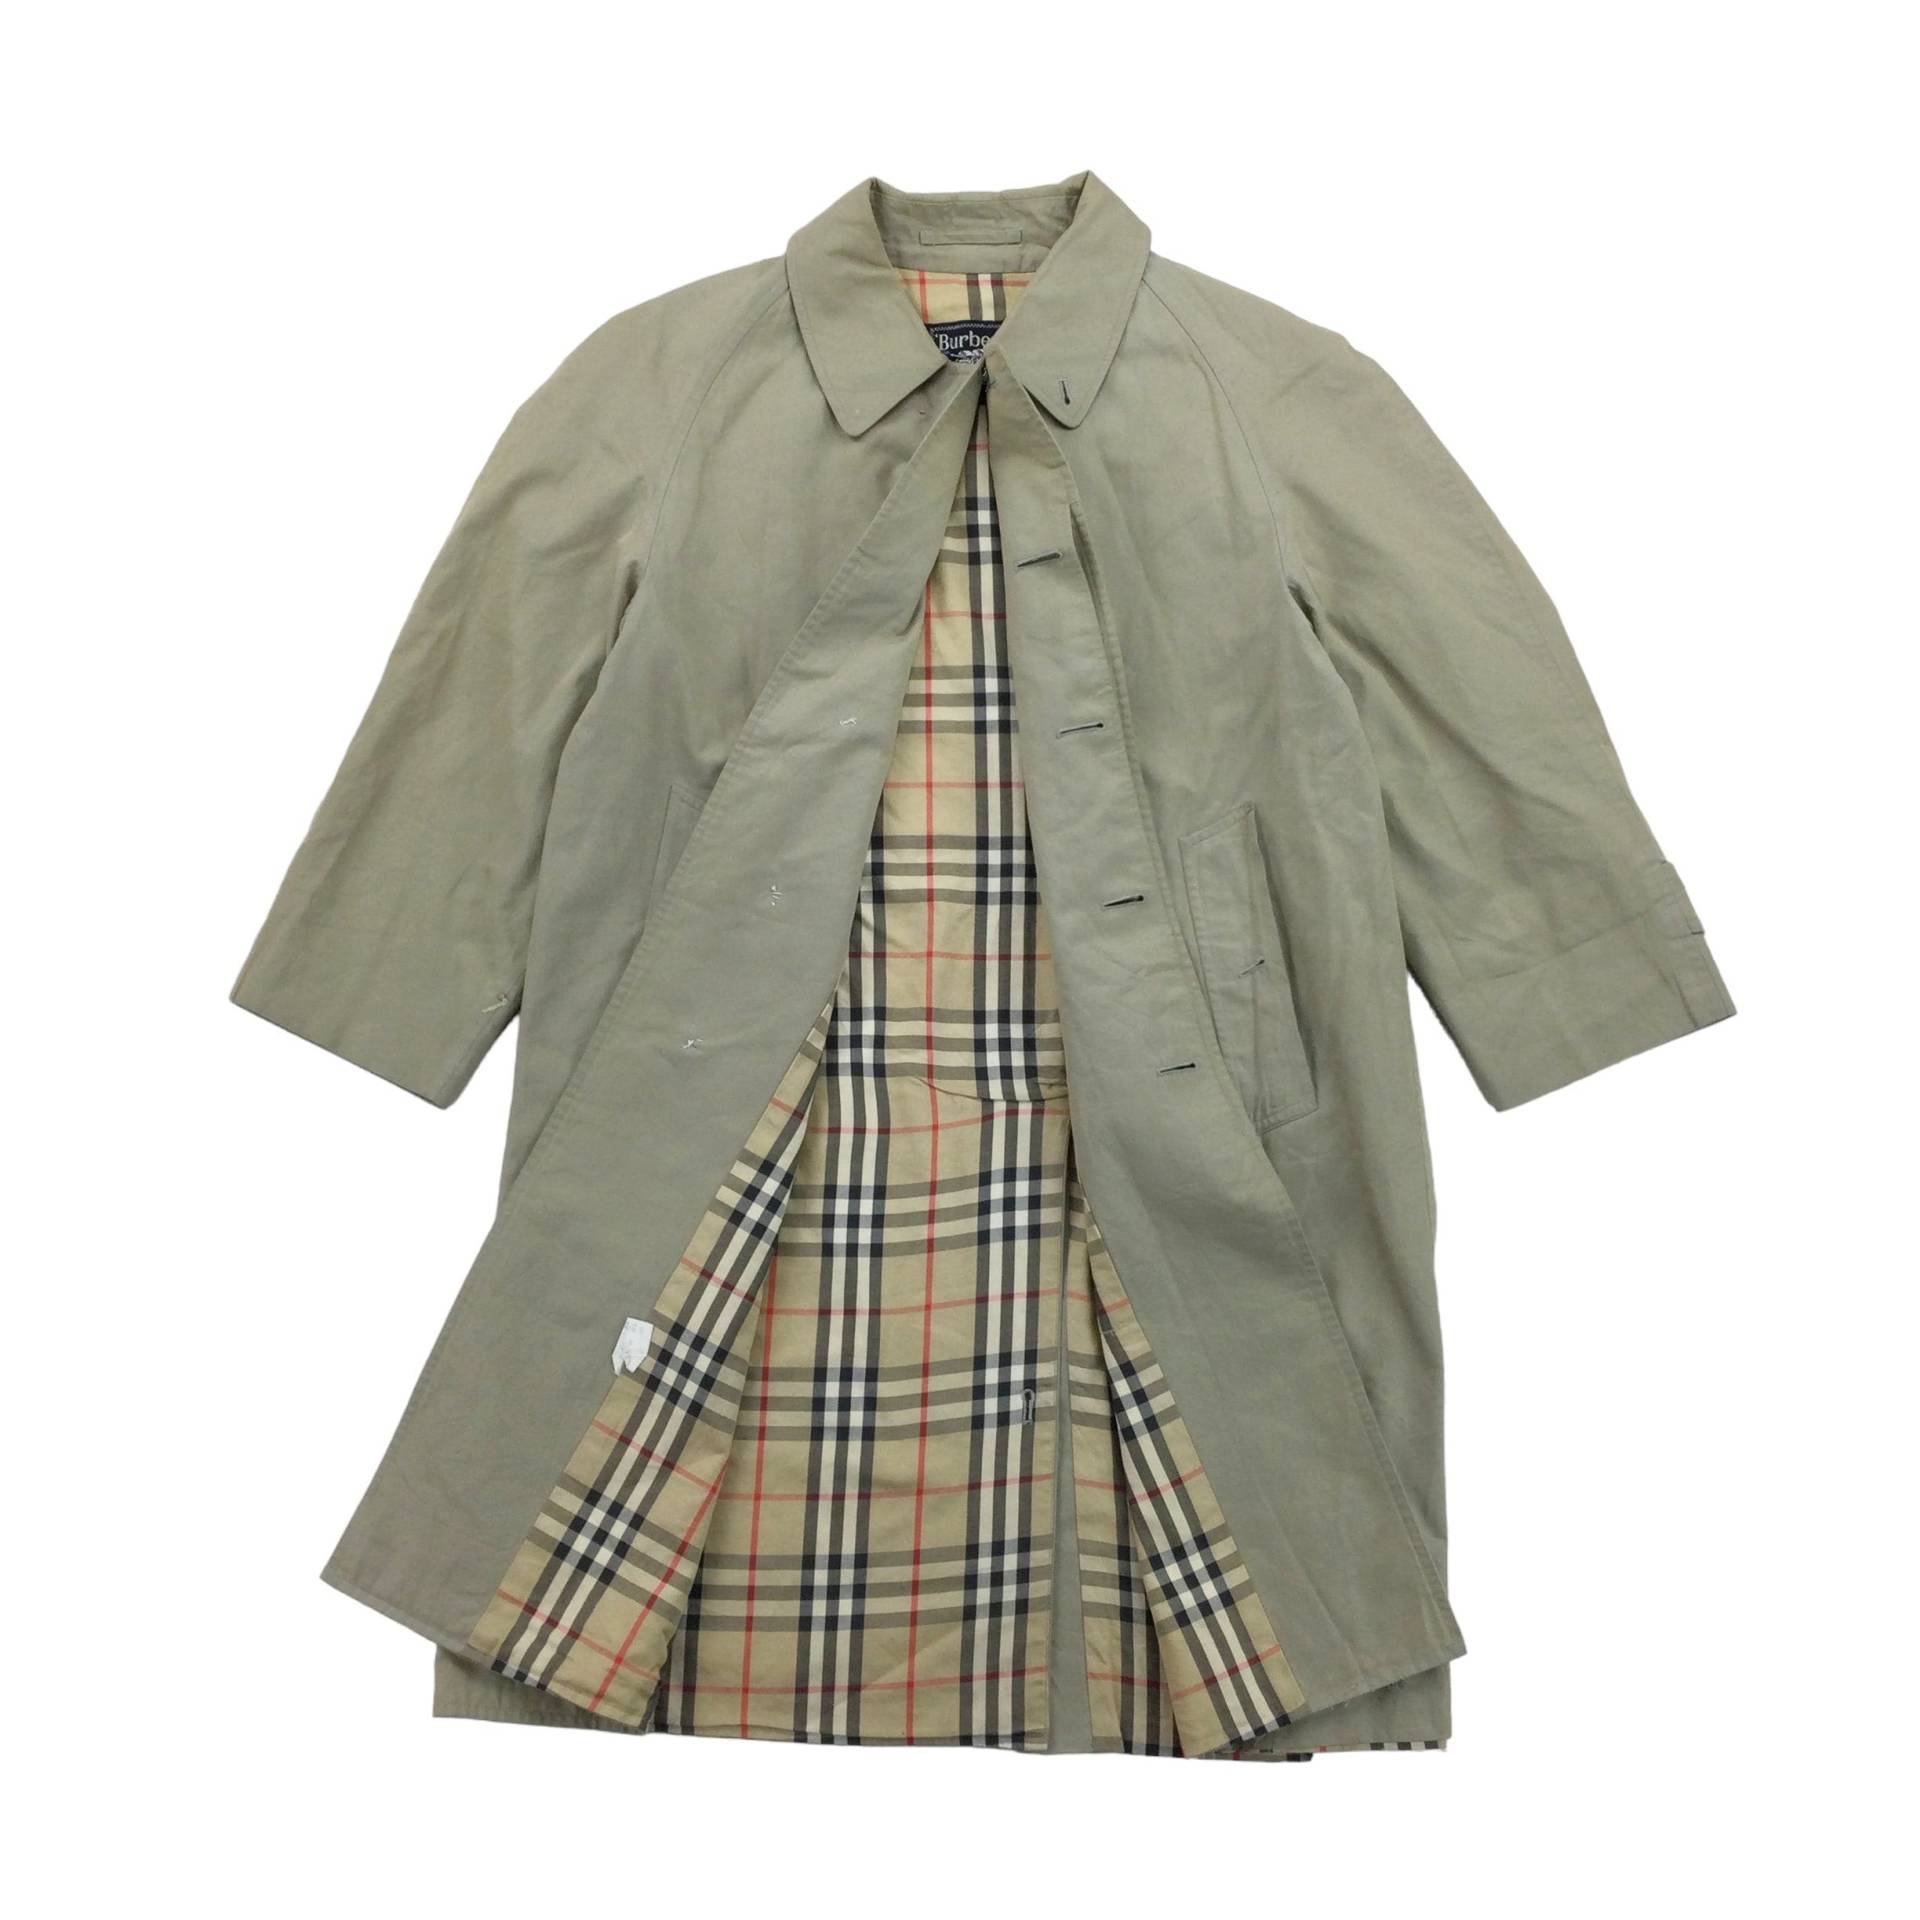 Vintage Burberry Trenchcoat - Small Size Herren Mantel Gebraucht von aloisstudio